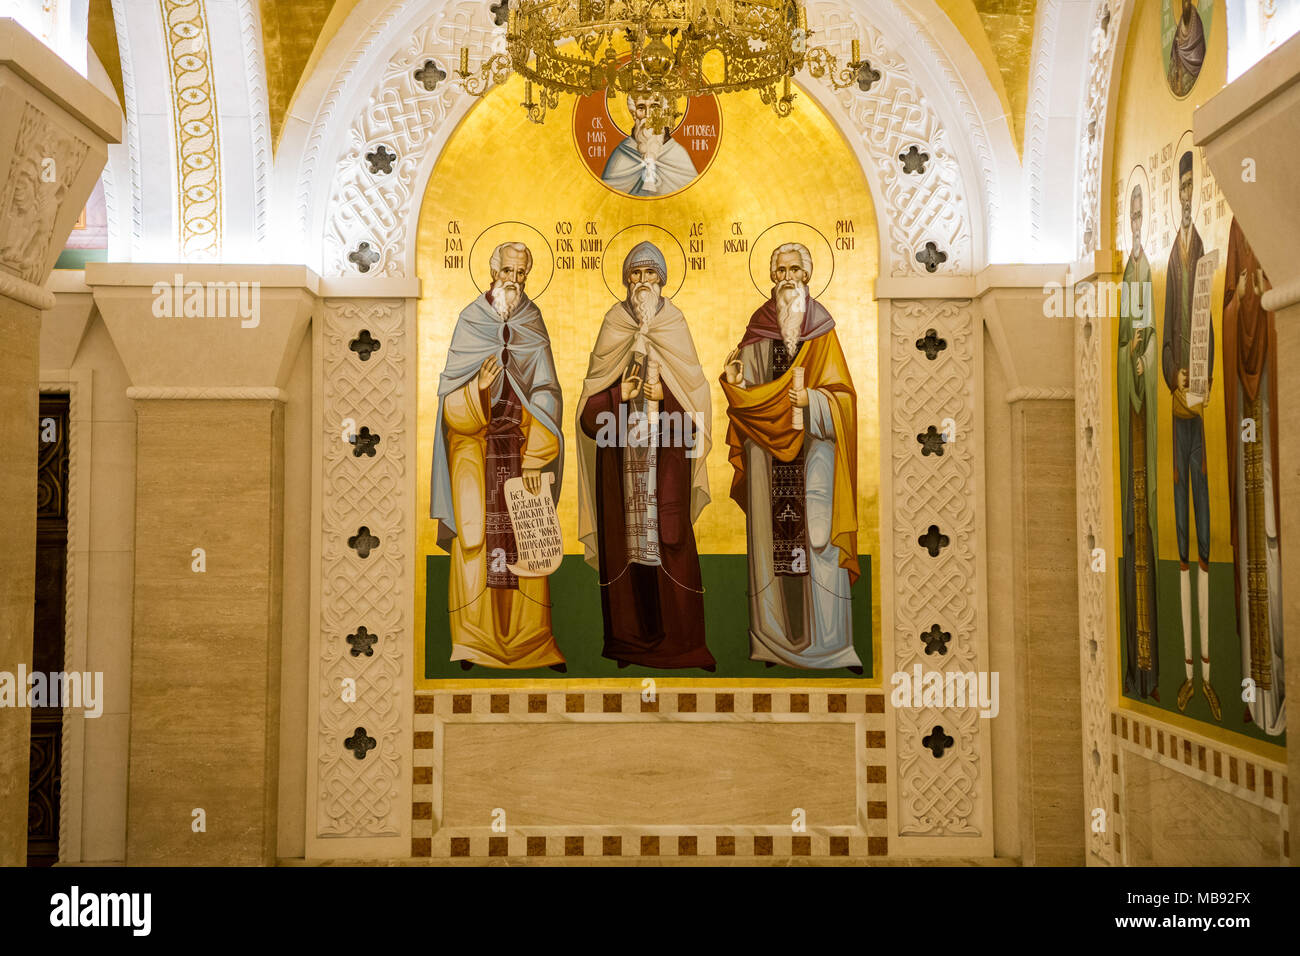 A Belgrado, in Serbia - Febbraio 23, 2018: cripta sotterranea della chiesa ortodossa di San Sava chiesa a Belgrado in Serbia Foto Stock